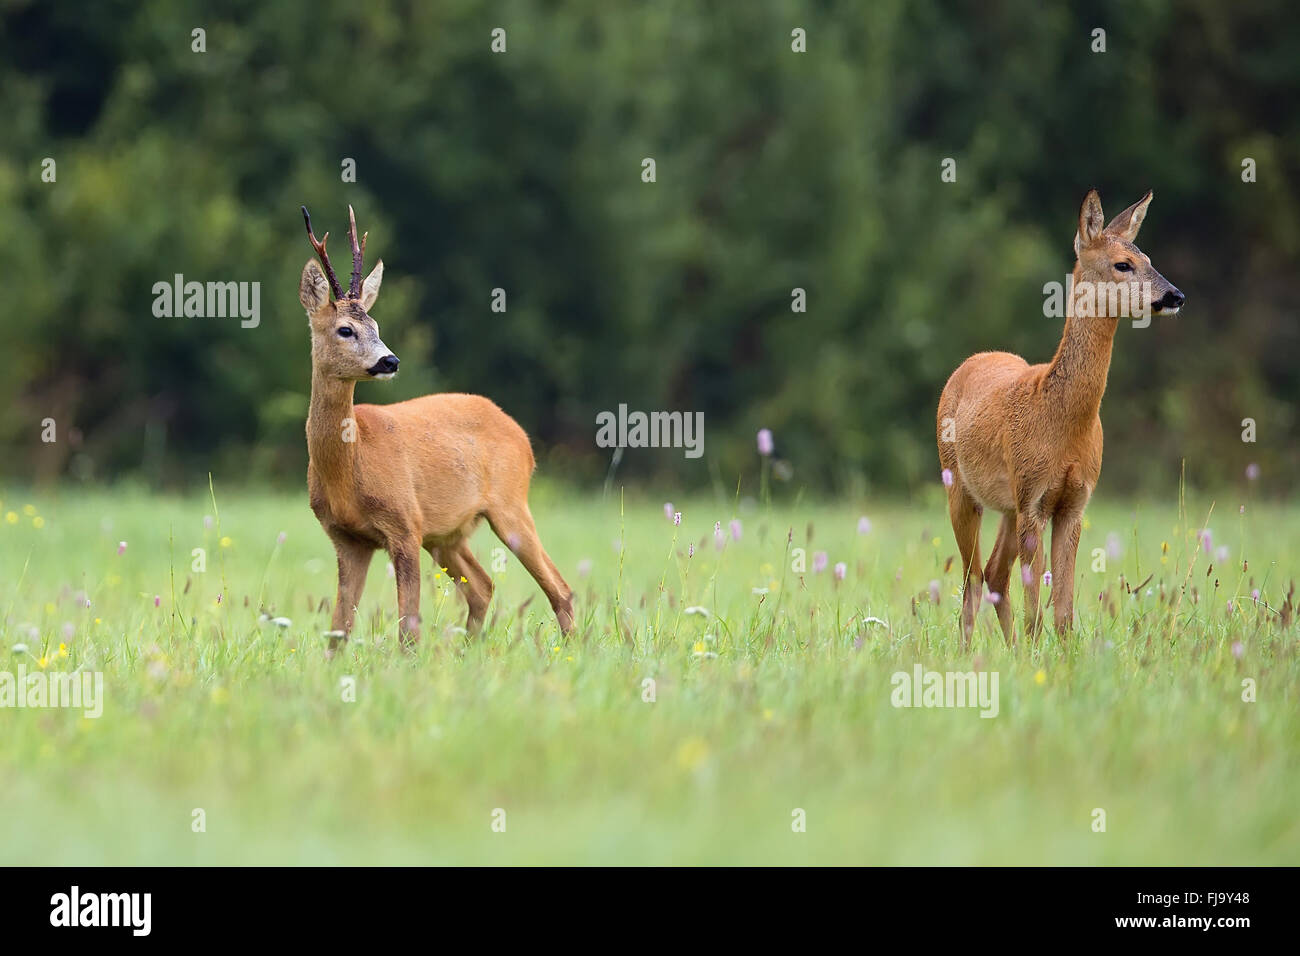 Buck deer with roe-deer in the wild Stock Photo